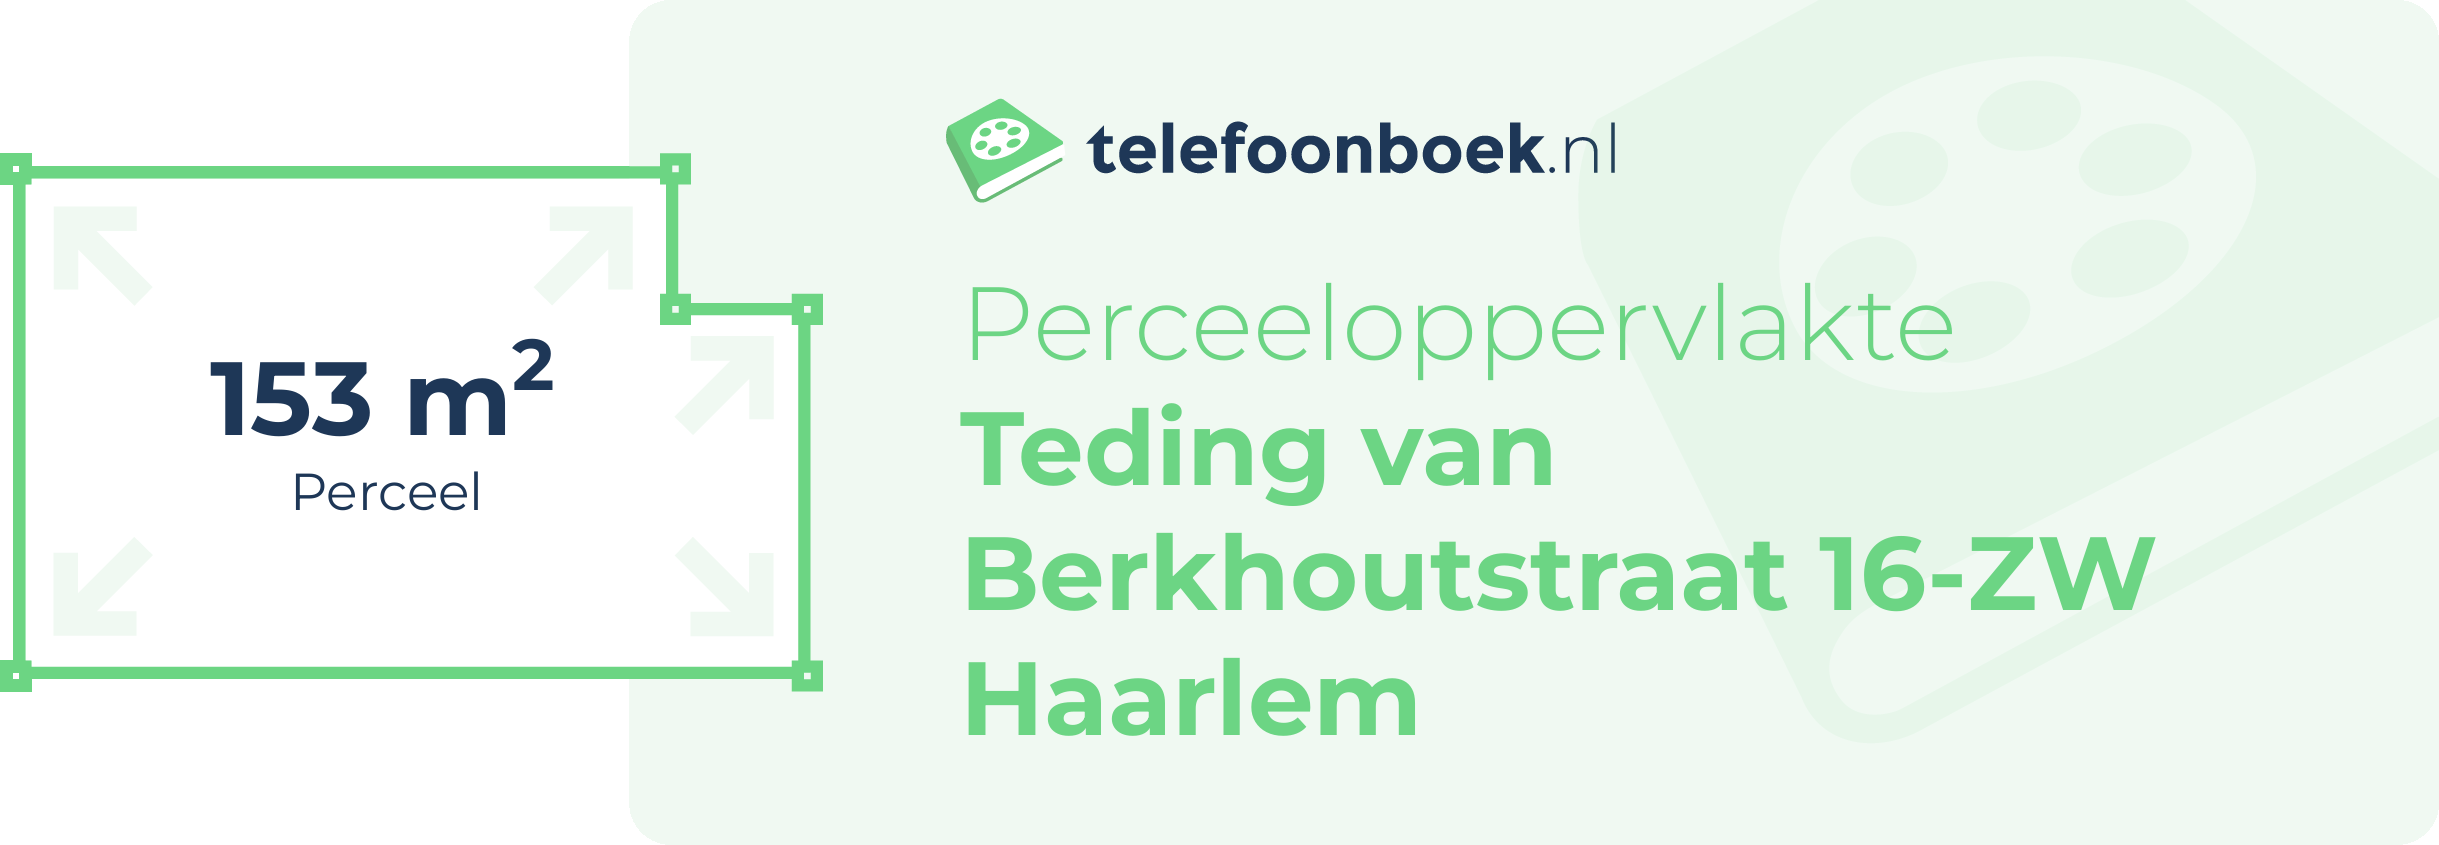 Perceeloppervlakte Teding Van Berkhoutstraat 16-ZW Haarlem